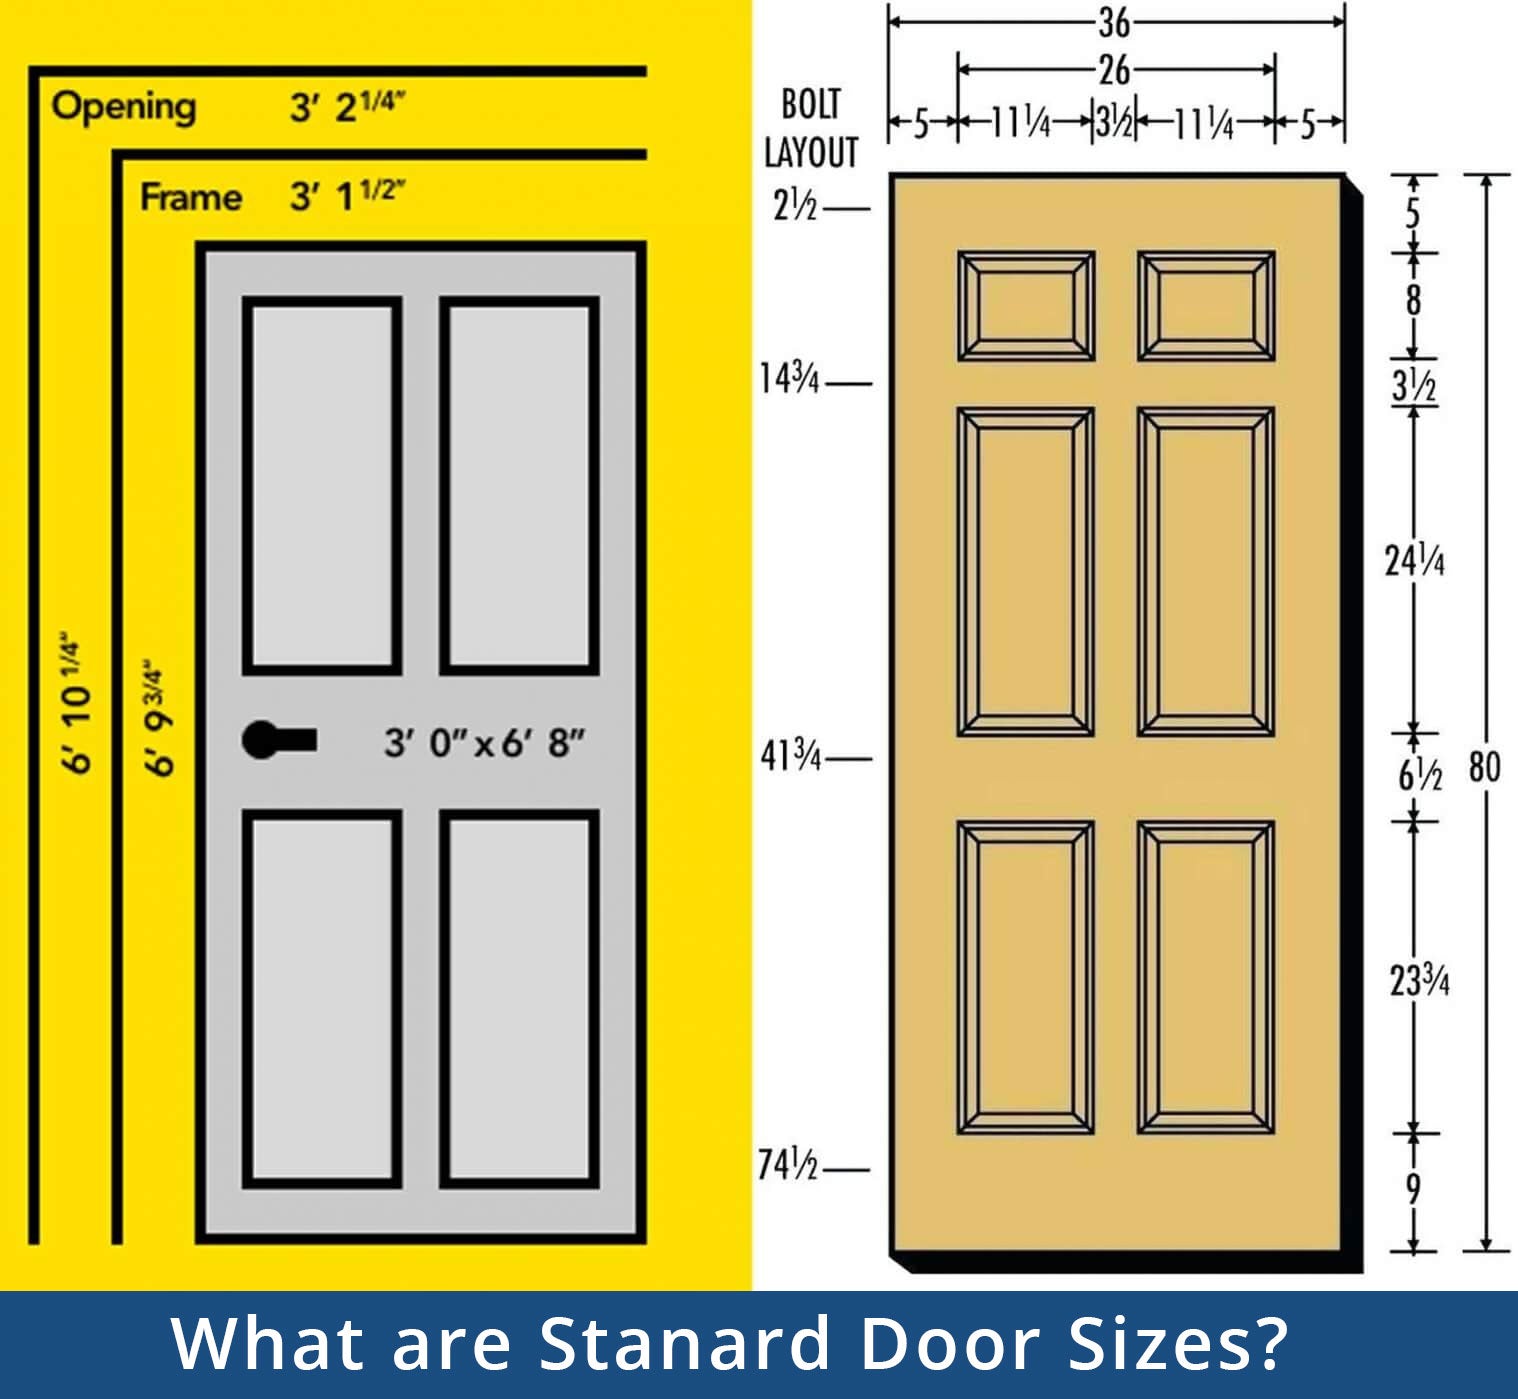 Standard Door Sizes